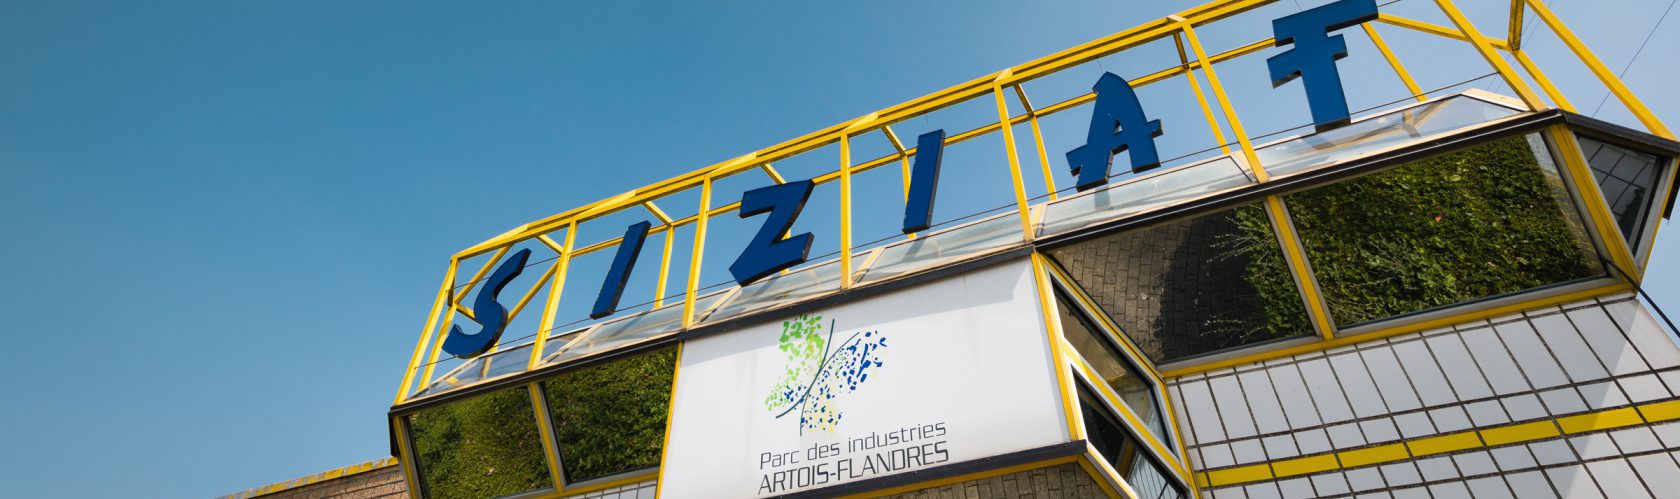 Parc des Industries Artois Flandres